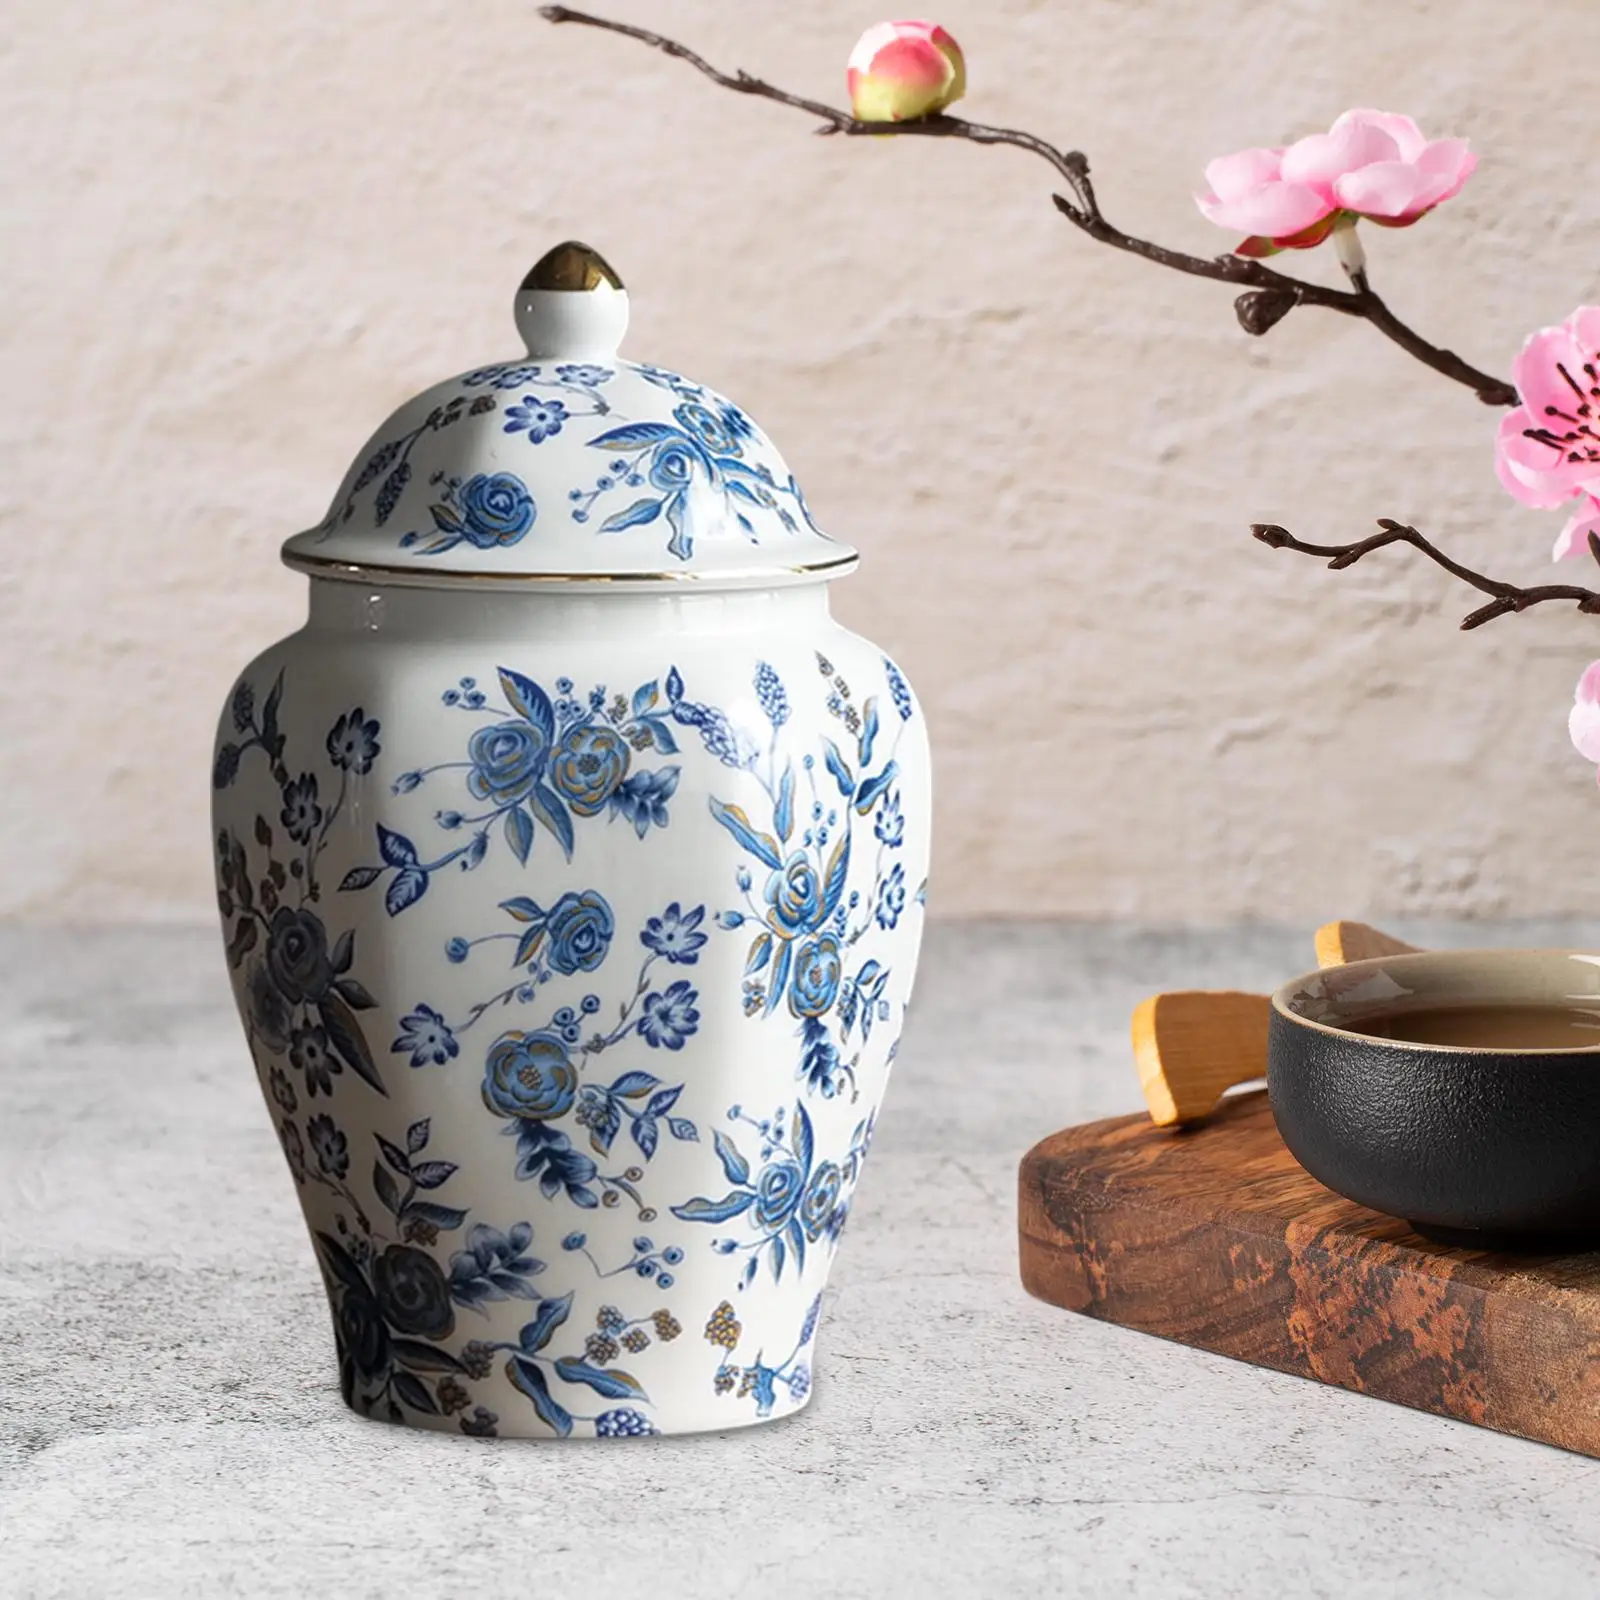 Flower Vase Storage Storage Jar Can Flower Arrangement Blue and White Porcelain Pot Elegant Ginger Jar with Lid Ceramic Tea Jar